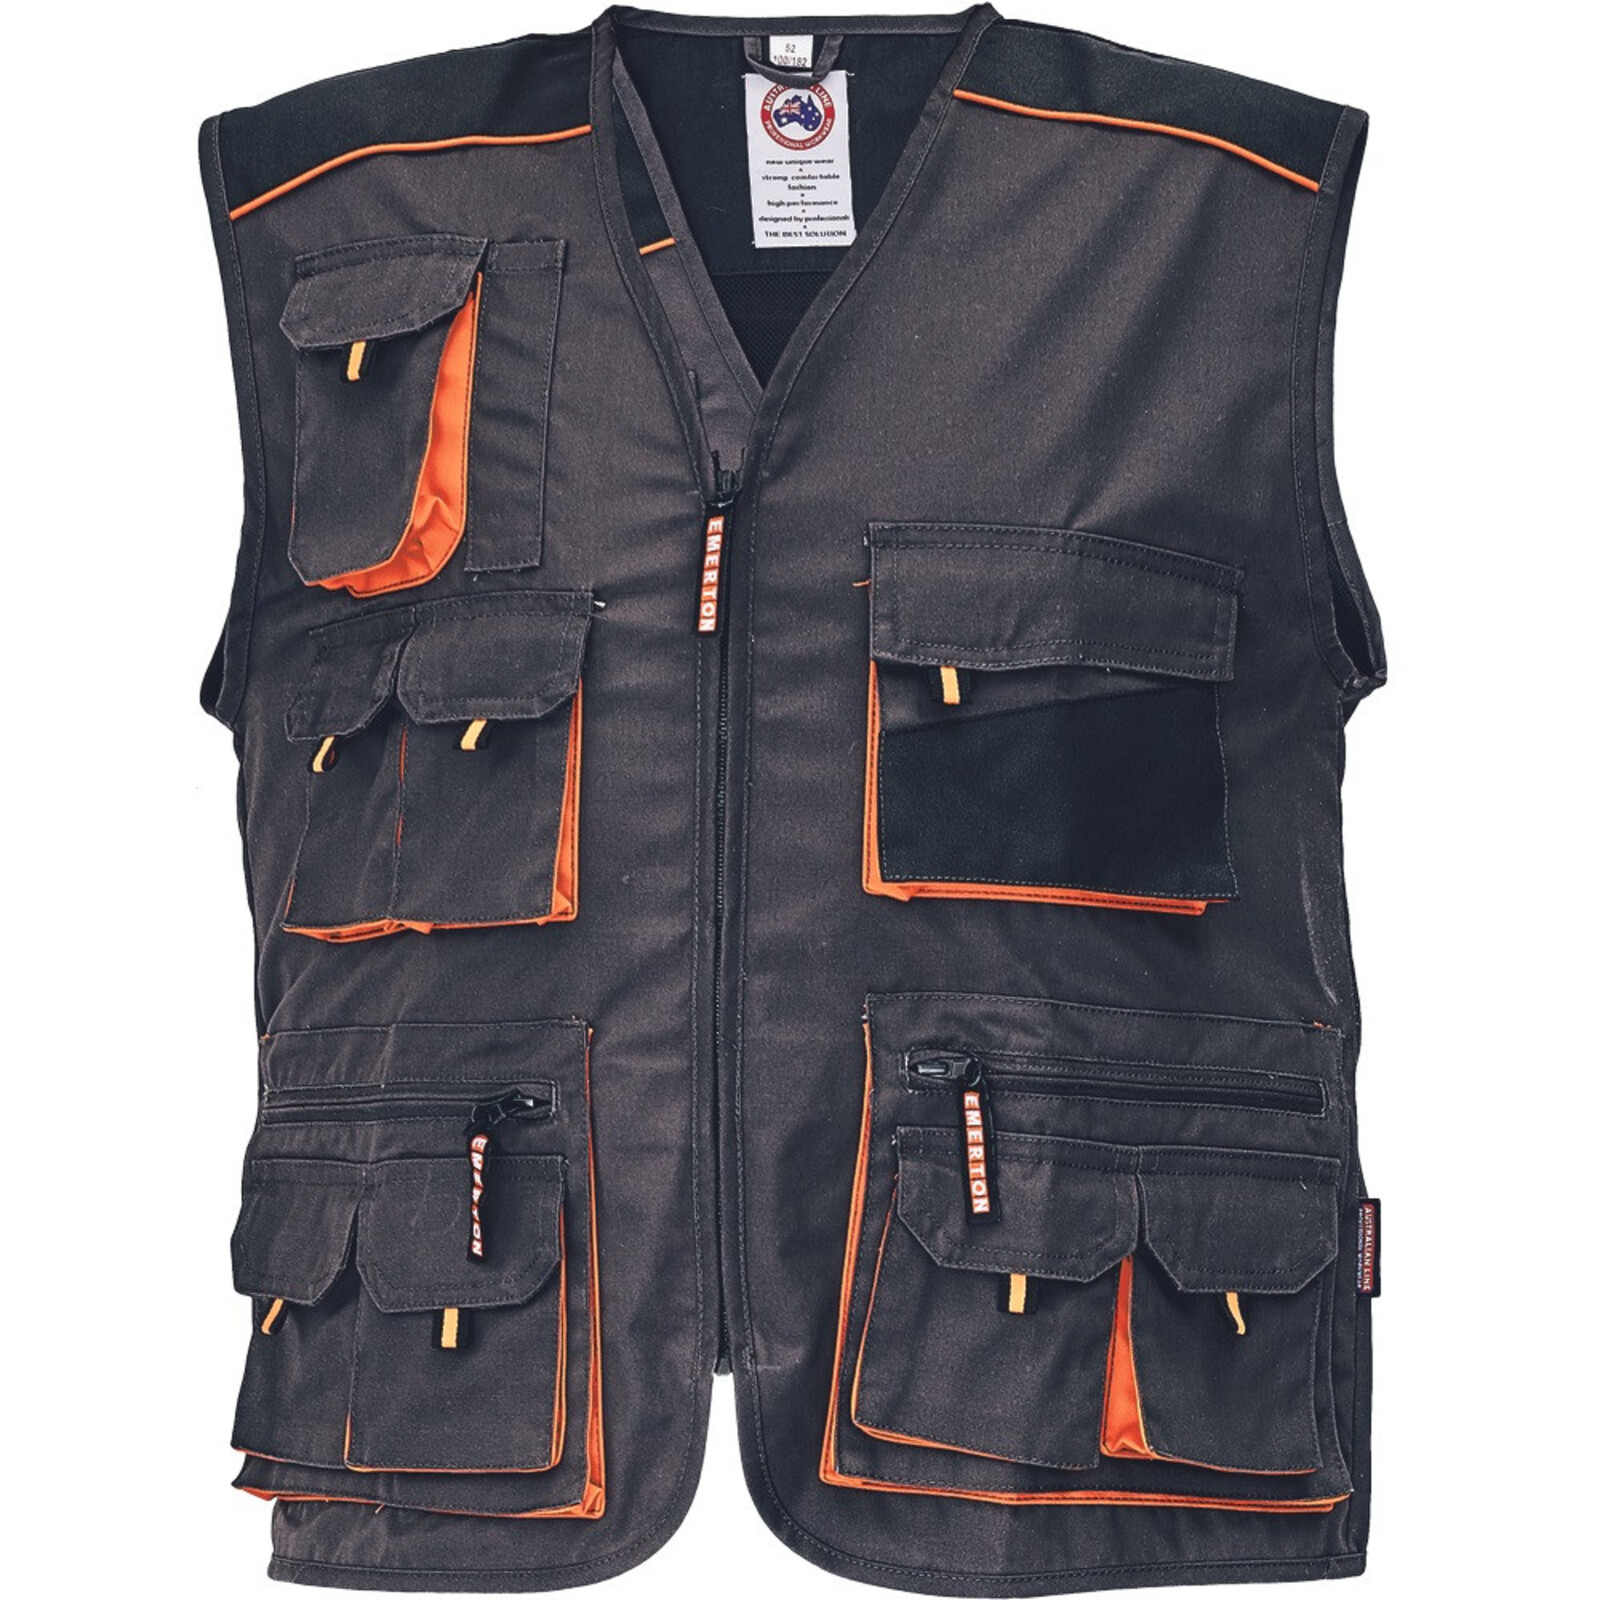 Odolná montérková vesta Emerton pánska - veľkosť: 52, farba: čierna/oranžová